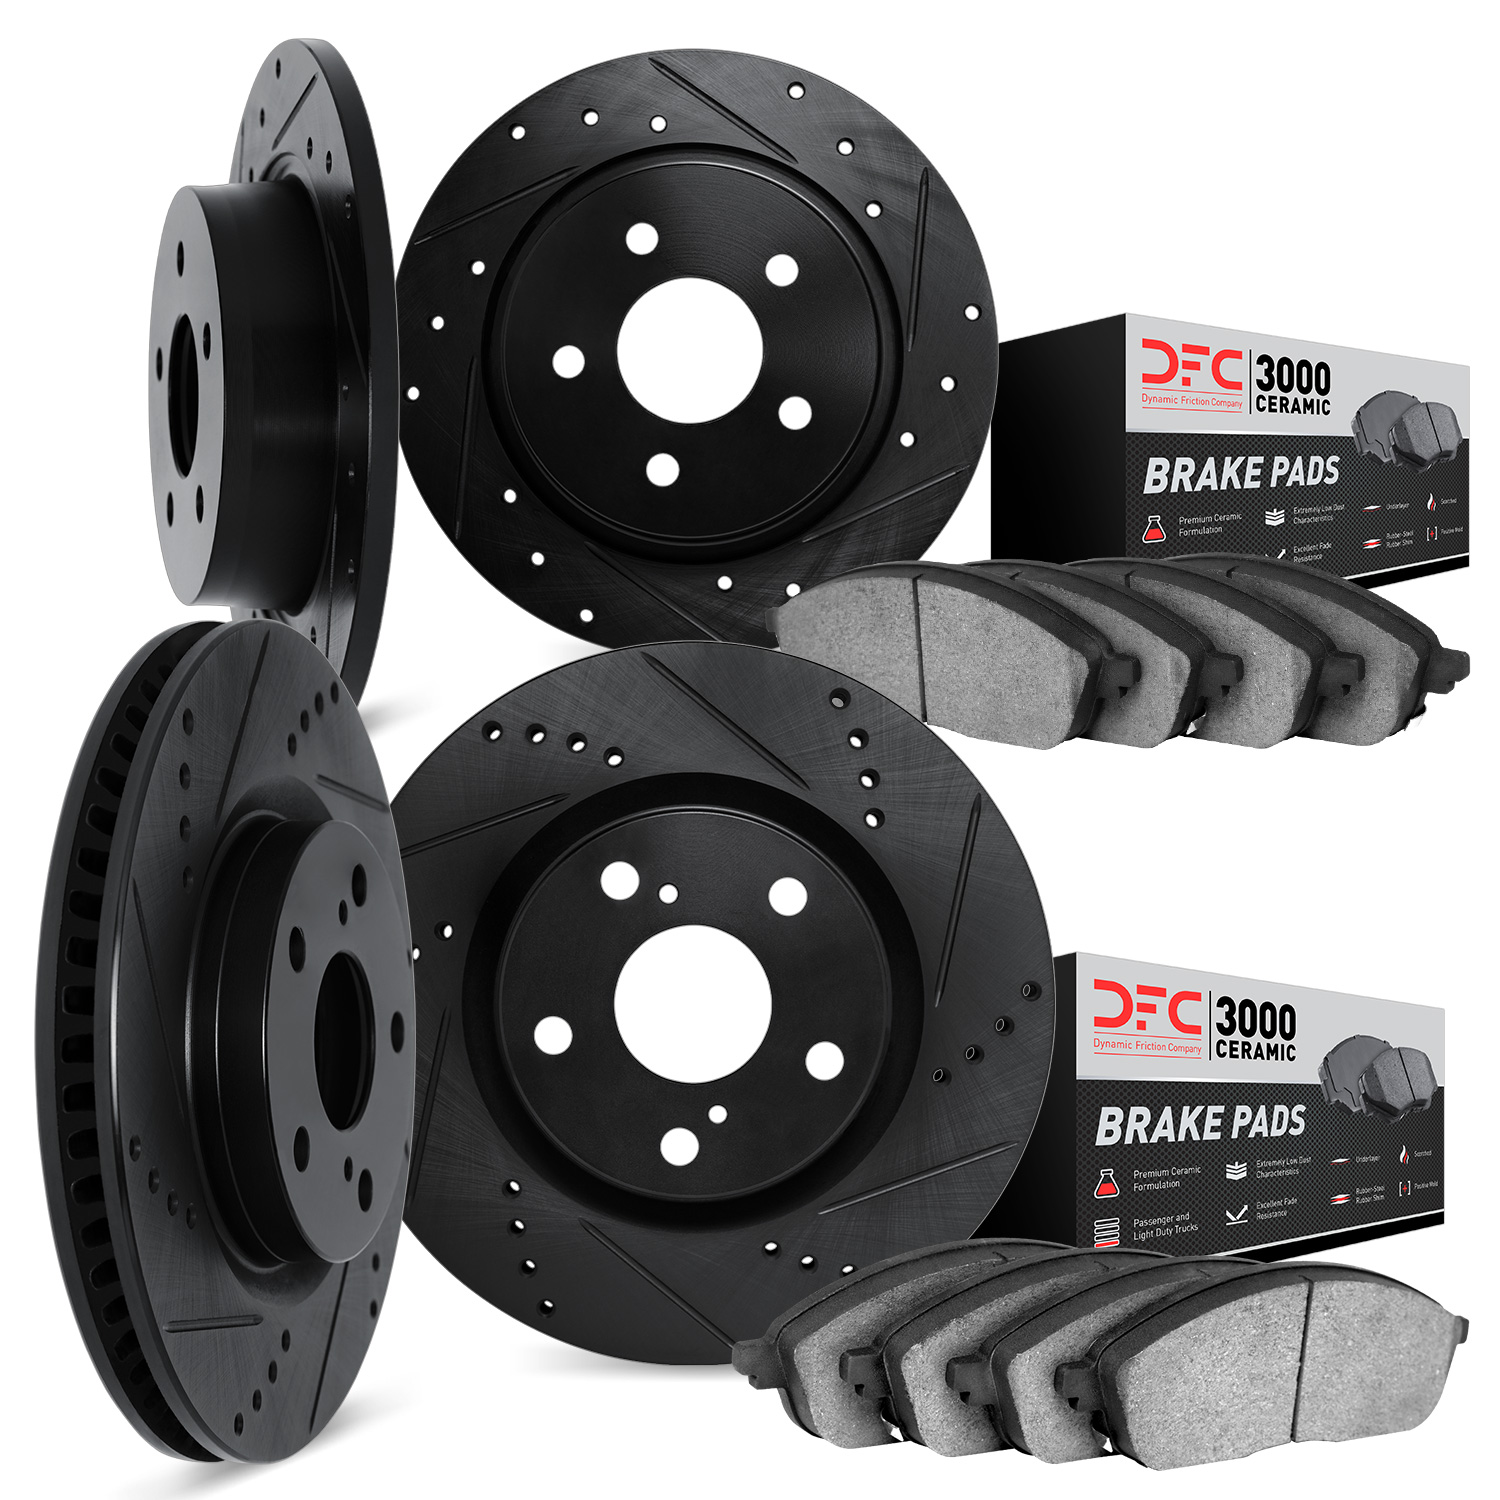 8304-03078 Drilled/Slotted Brake Rotors with 3000-Series Ceramic Brake Pads Kit [Black], Fits Select Kia/Hyundai/Genesis, Positi